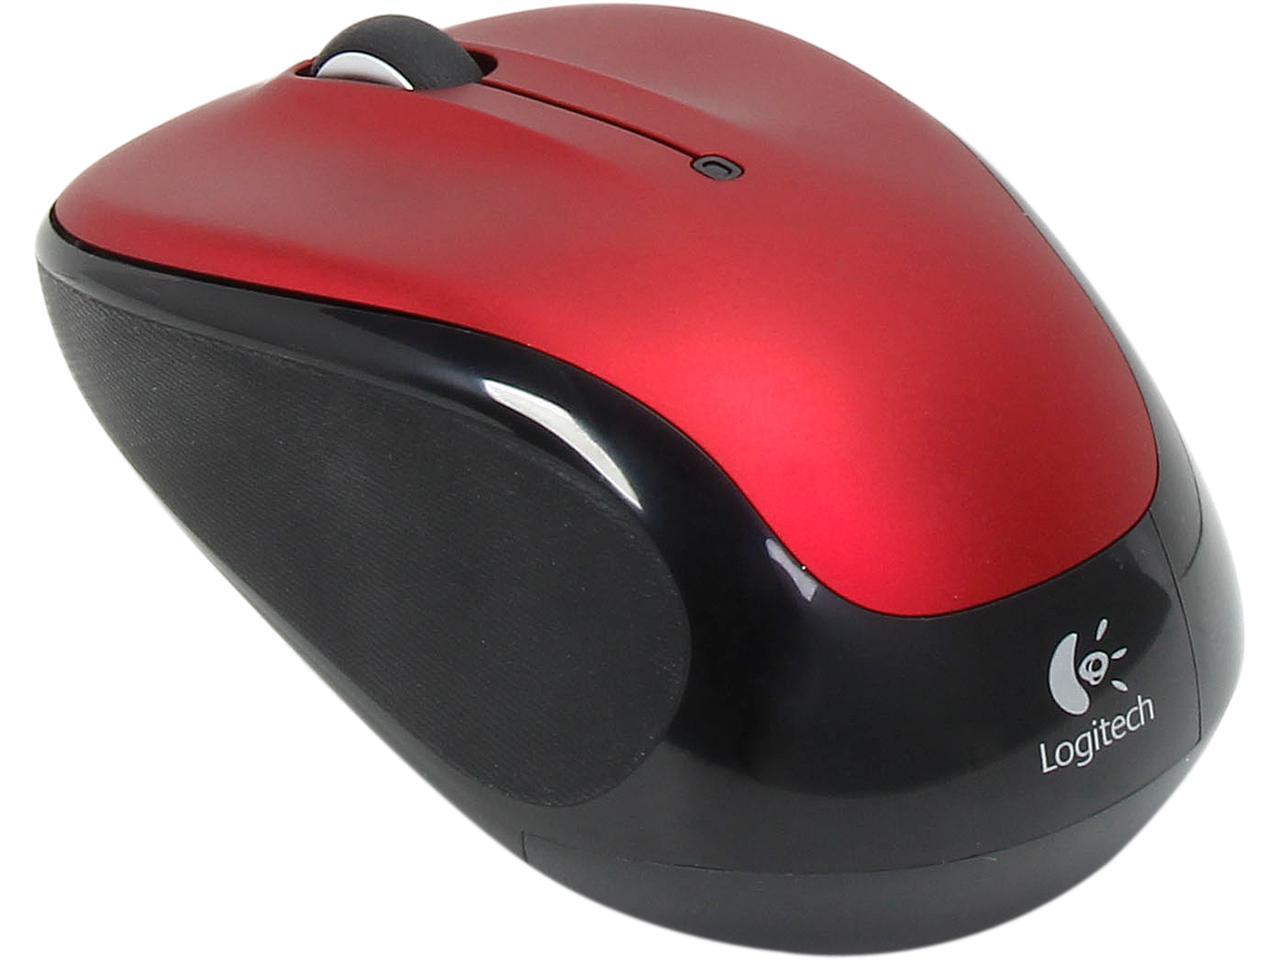 Er 12 325 m1. Logitech Wireless Mouse m325. Мышь Logitech Wireless Mouse m325 Red-Black USB. Genius m325. Мышь Logitech m185 беспроводная, 1000dpi, USB, чёрно-красный (910-002633).